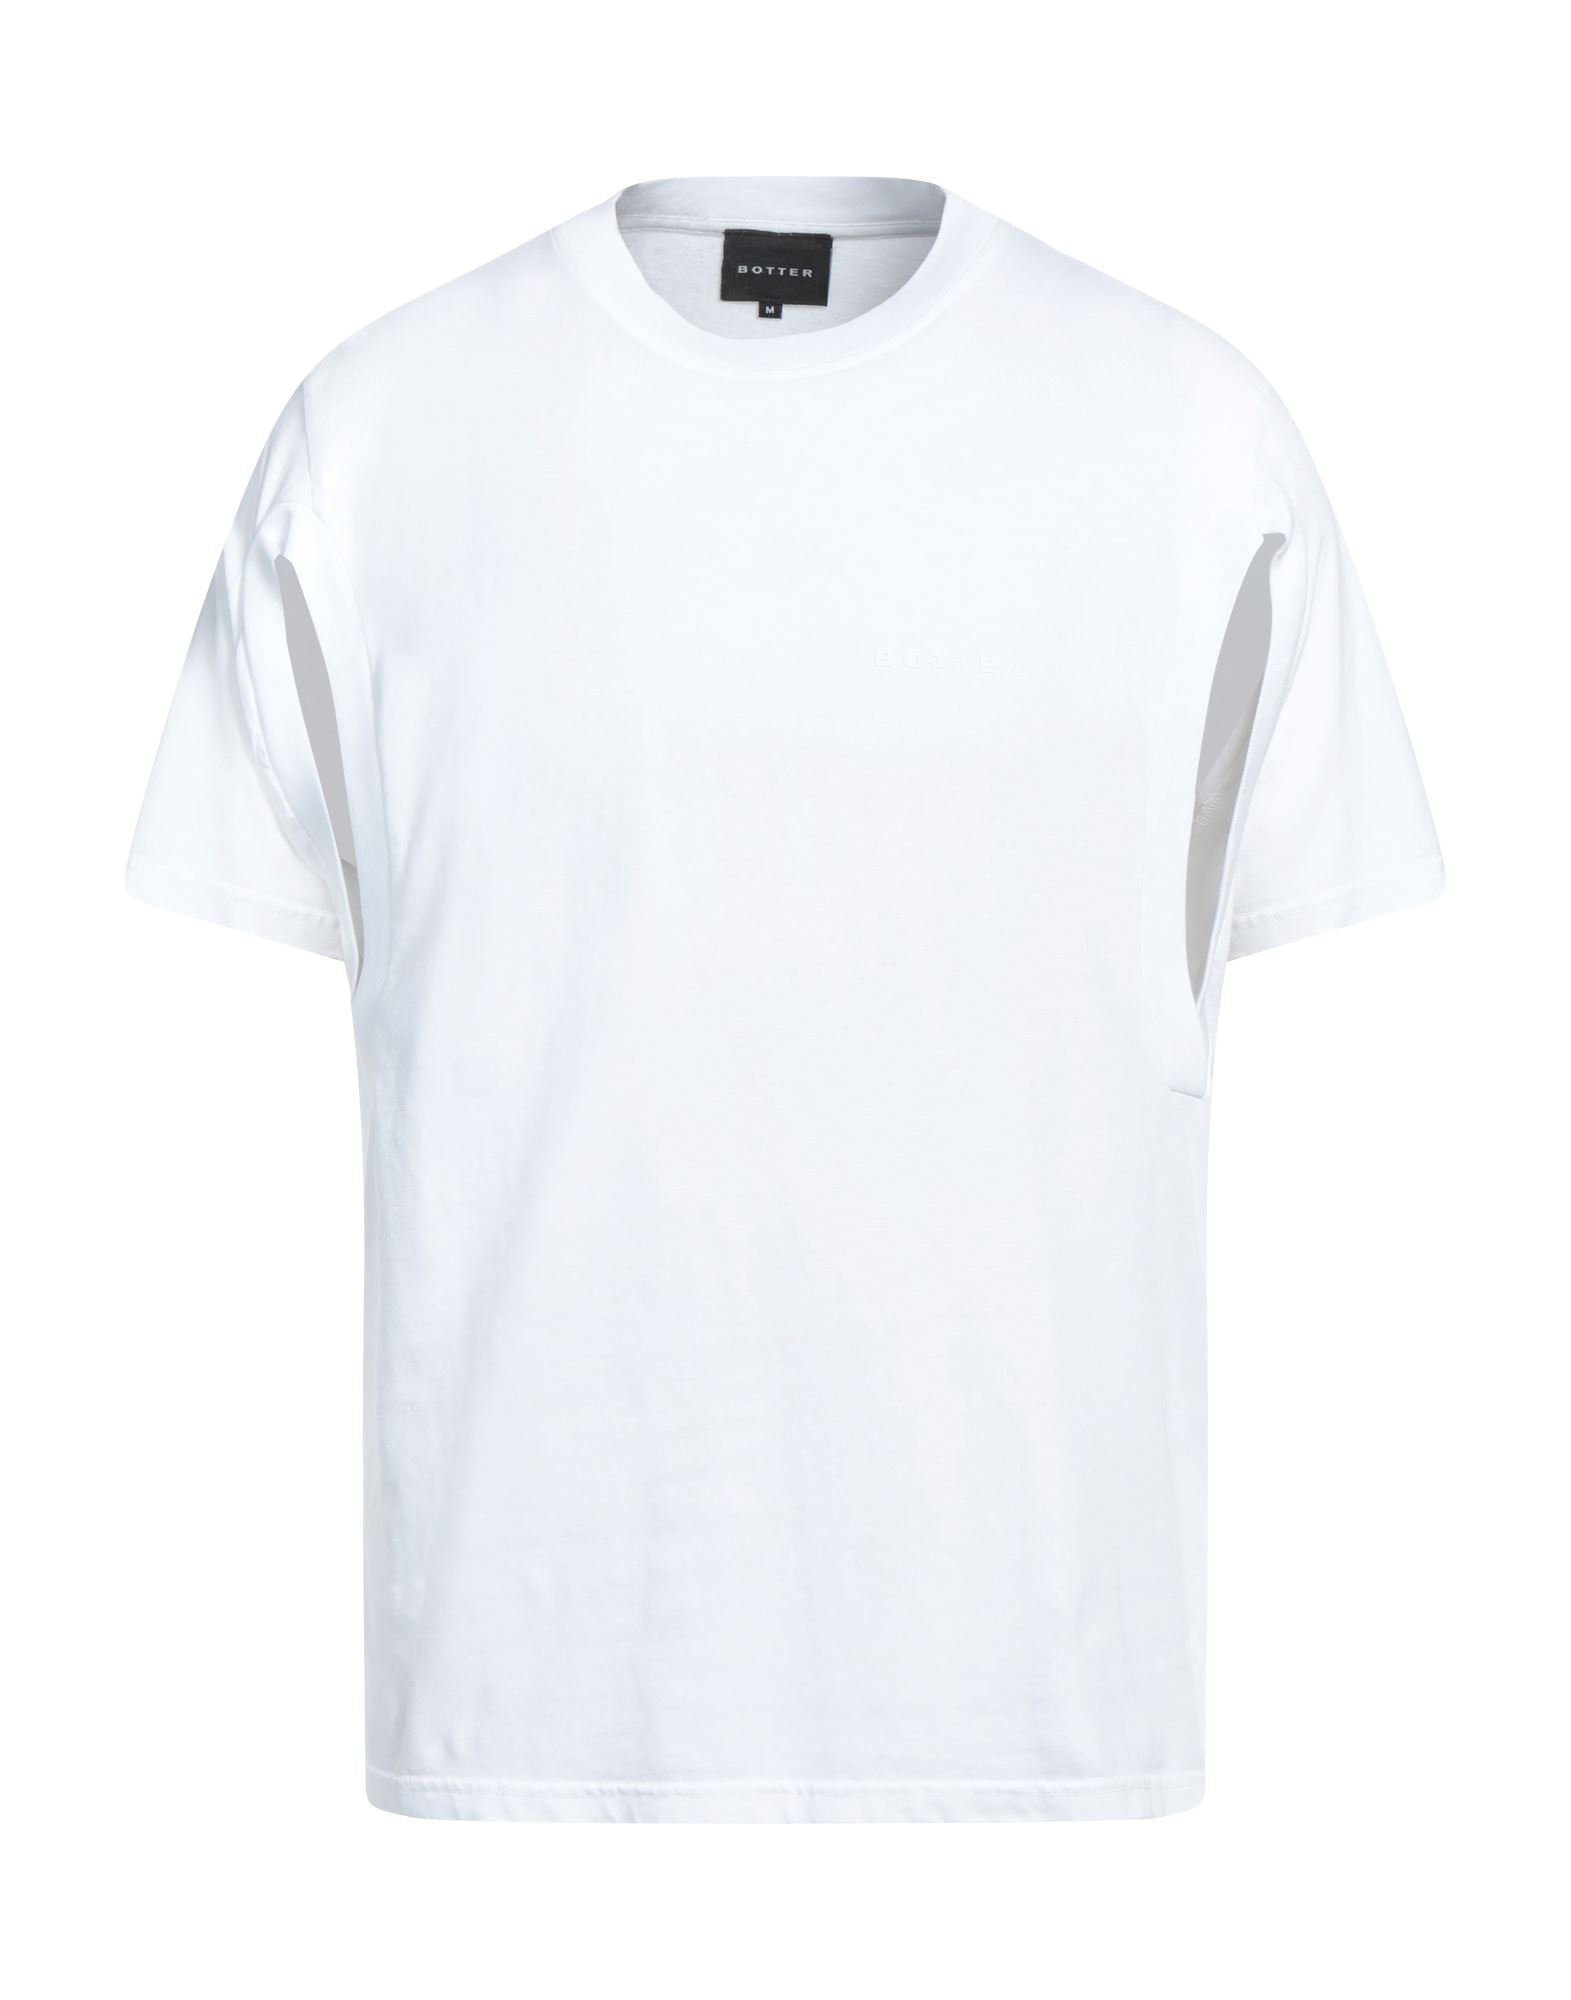 BOTTER T-shirts Herren Weiß von BOTTER